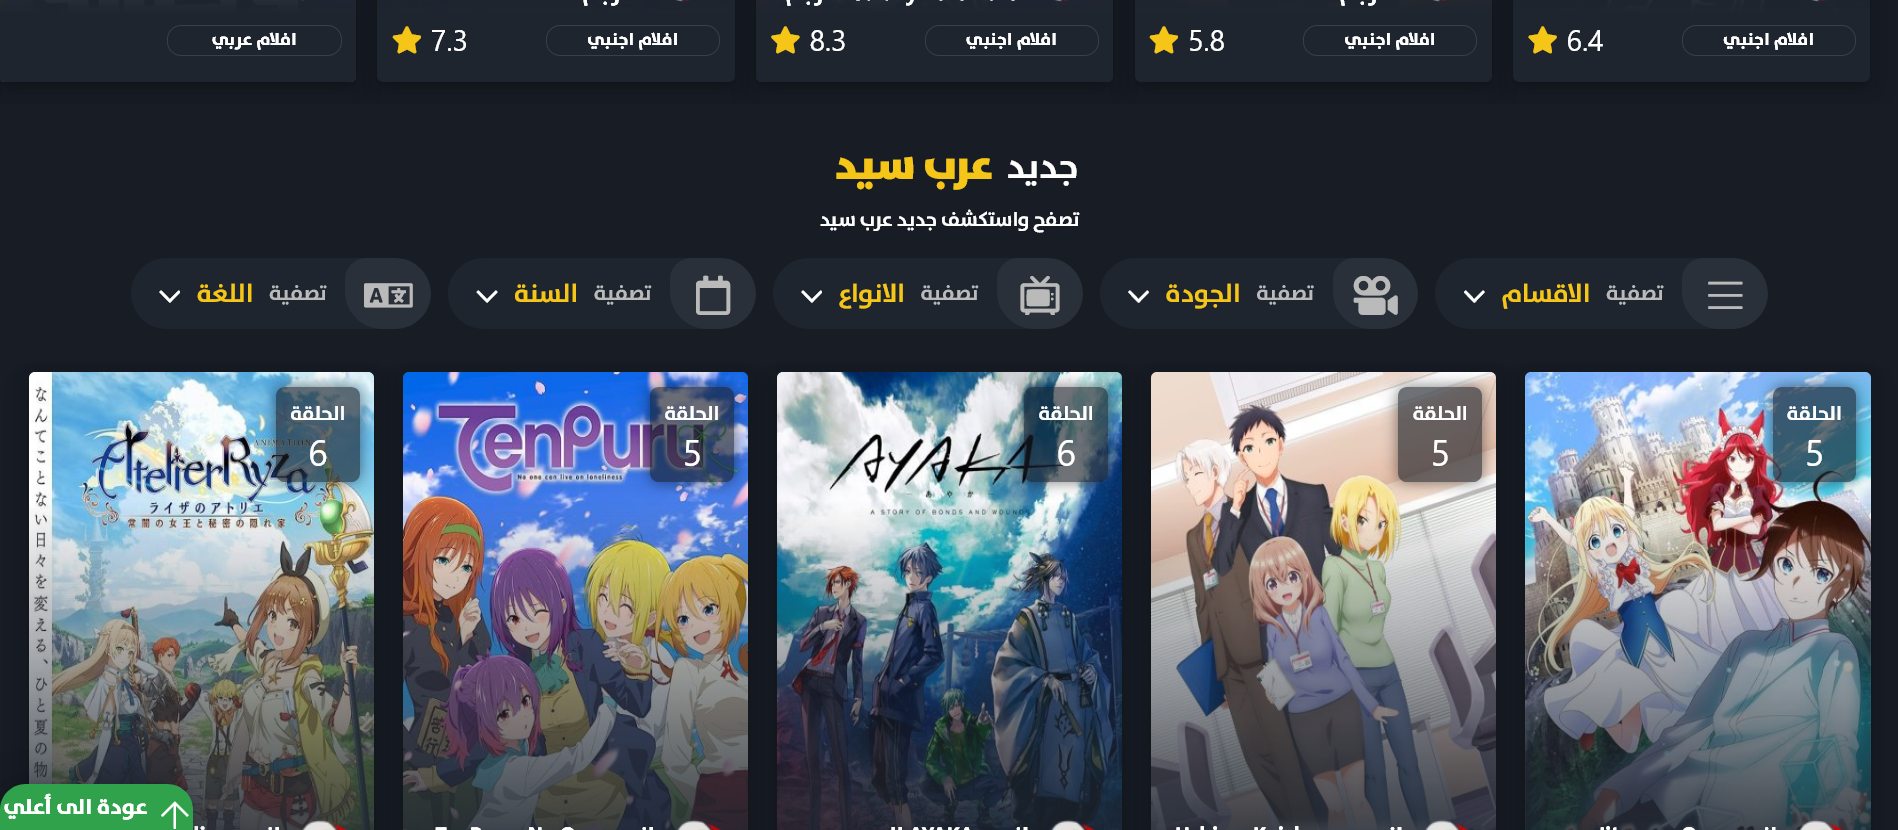 افلام  عرب سيد الموقع الأول لمشاهدة الافلام والمسلسلات Arabseed